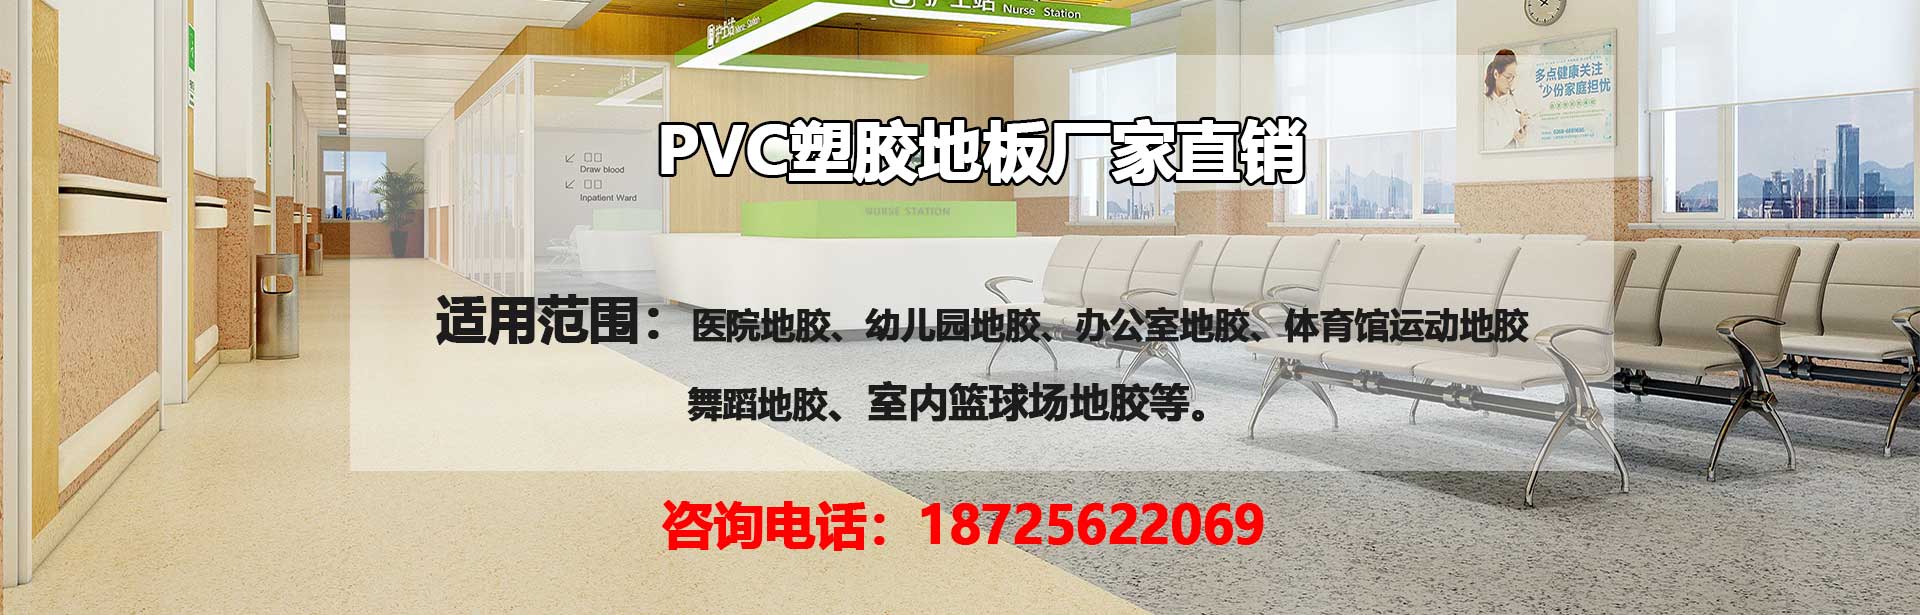 重庆PVC塑胶地板